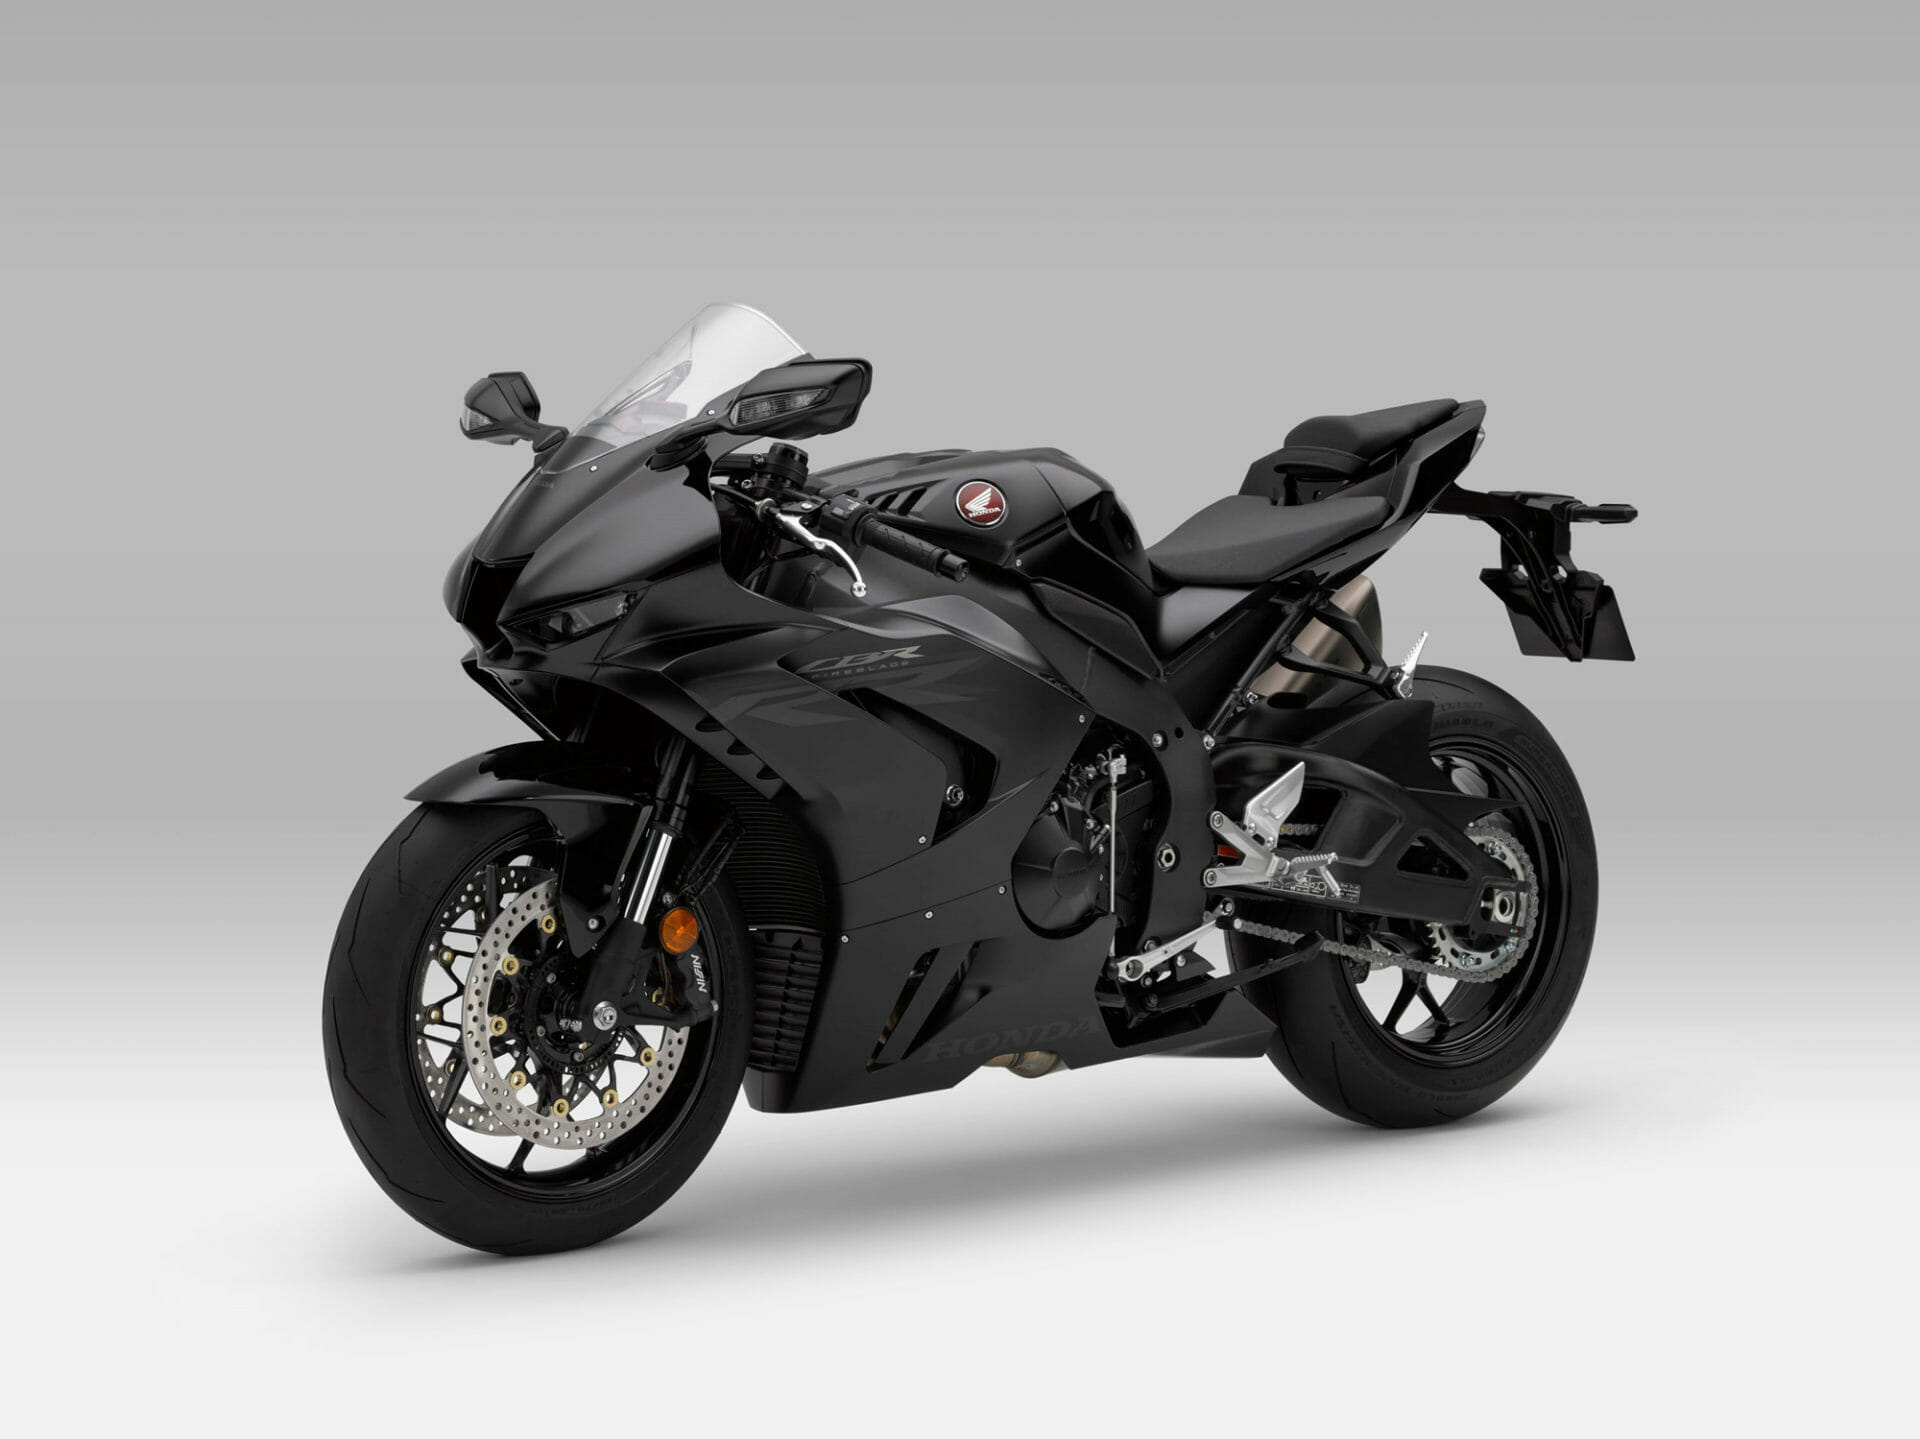 HONDA CBR1000RR-R SP 2020 – Motorcycle News App – Motorrad Nachrichten App – MotorcyclesNews (5)